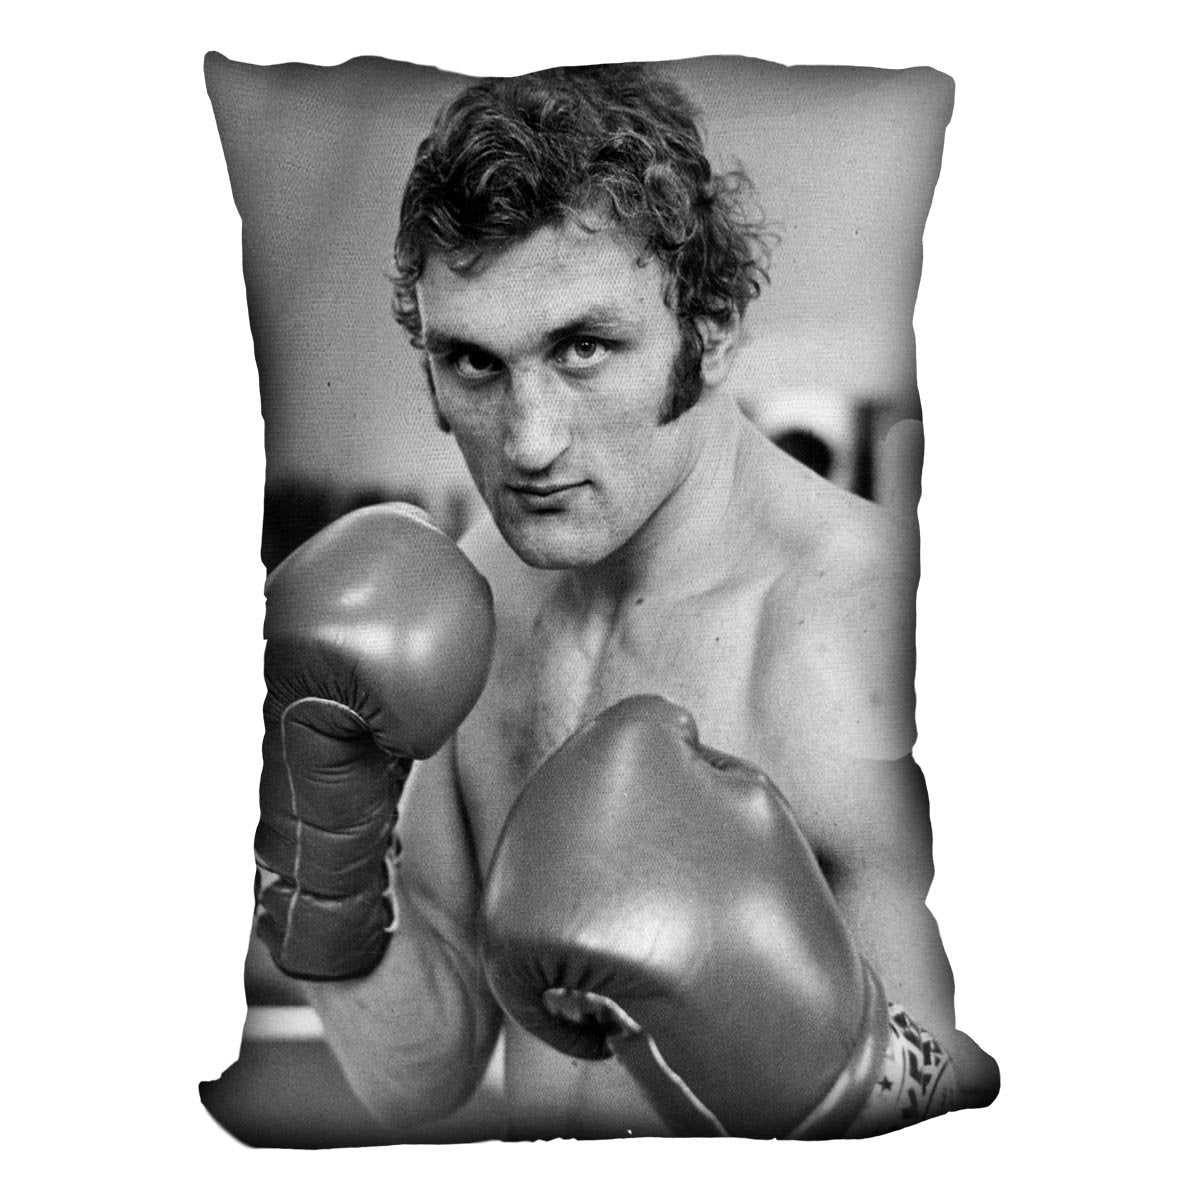 Boxer Joe Bugner Cushion